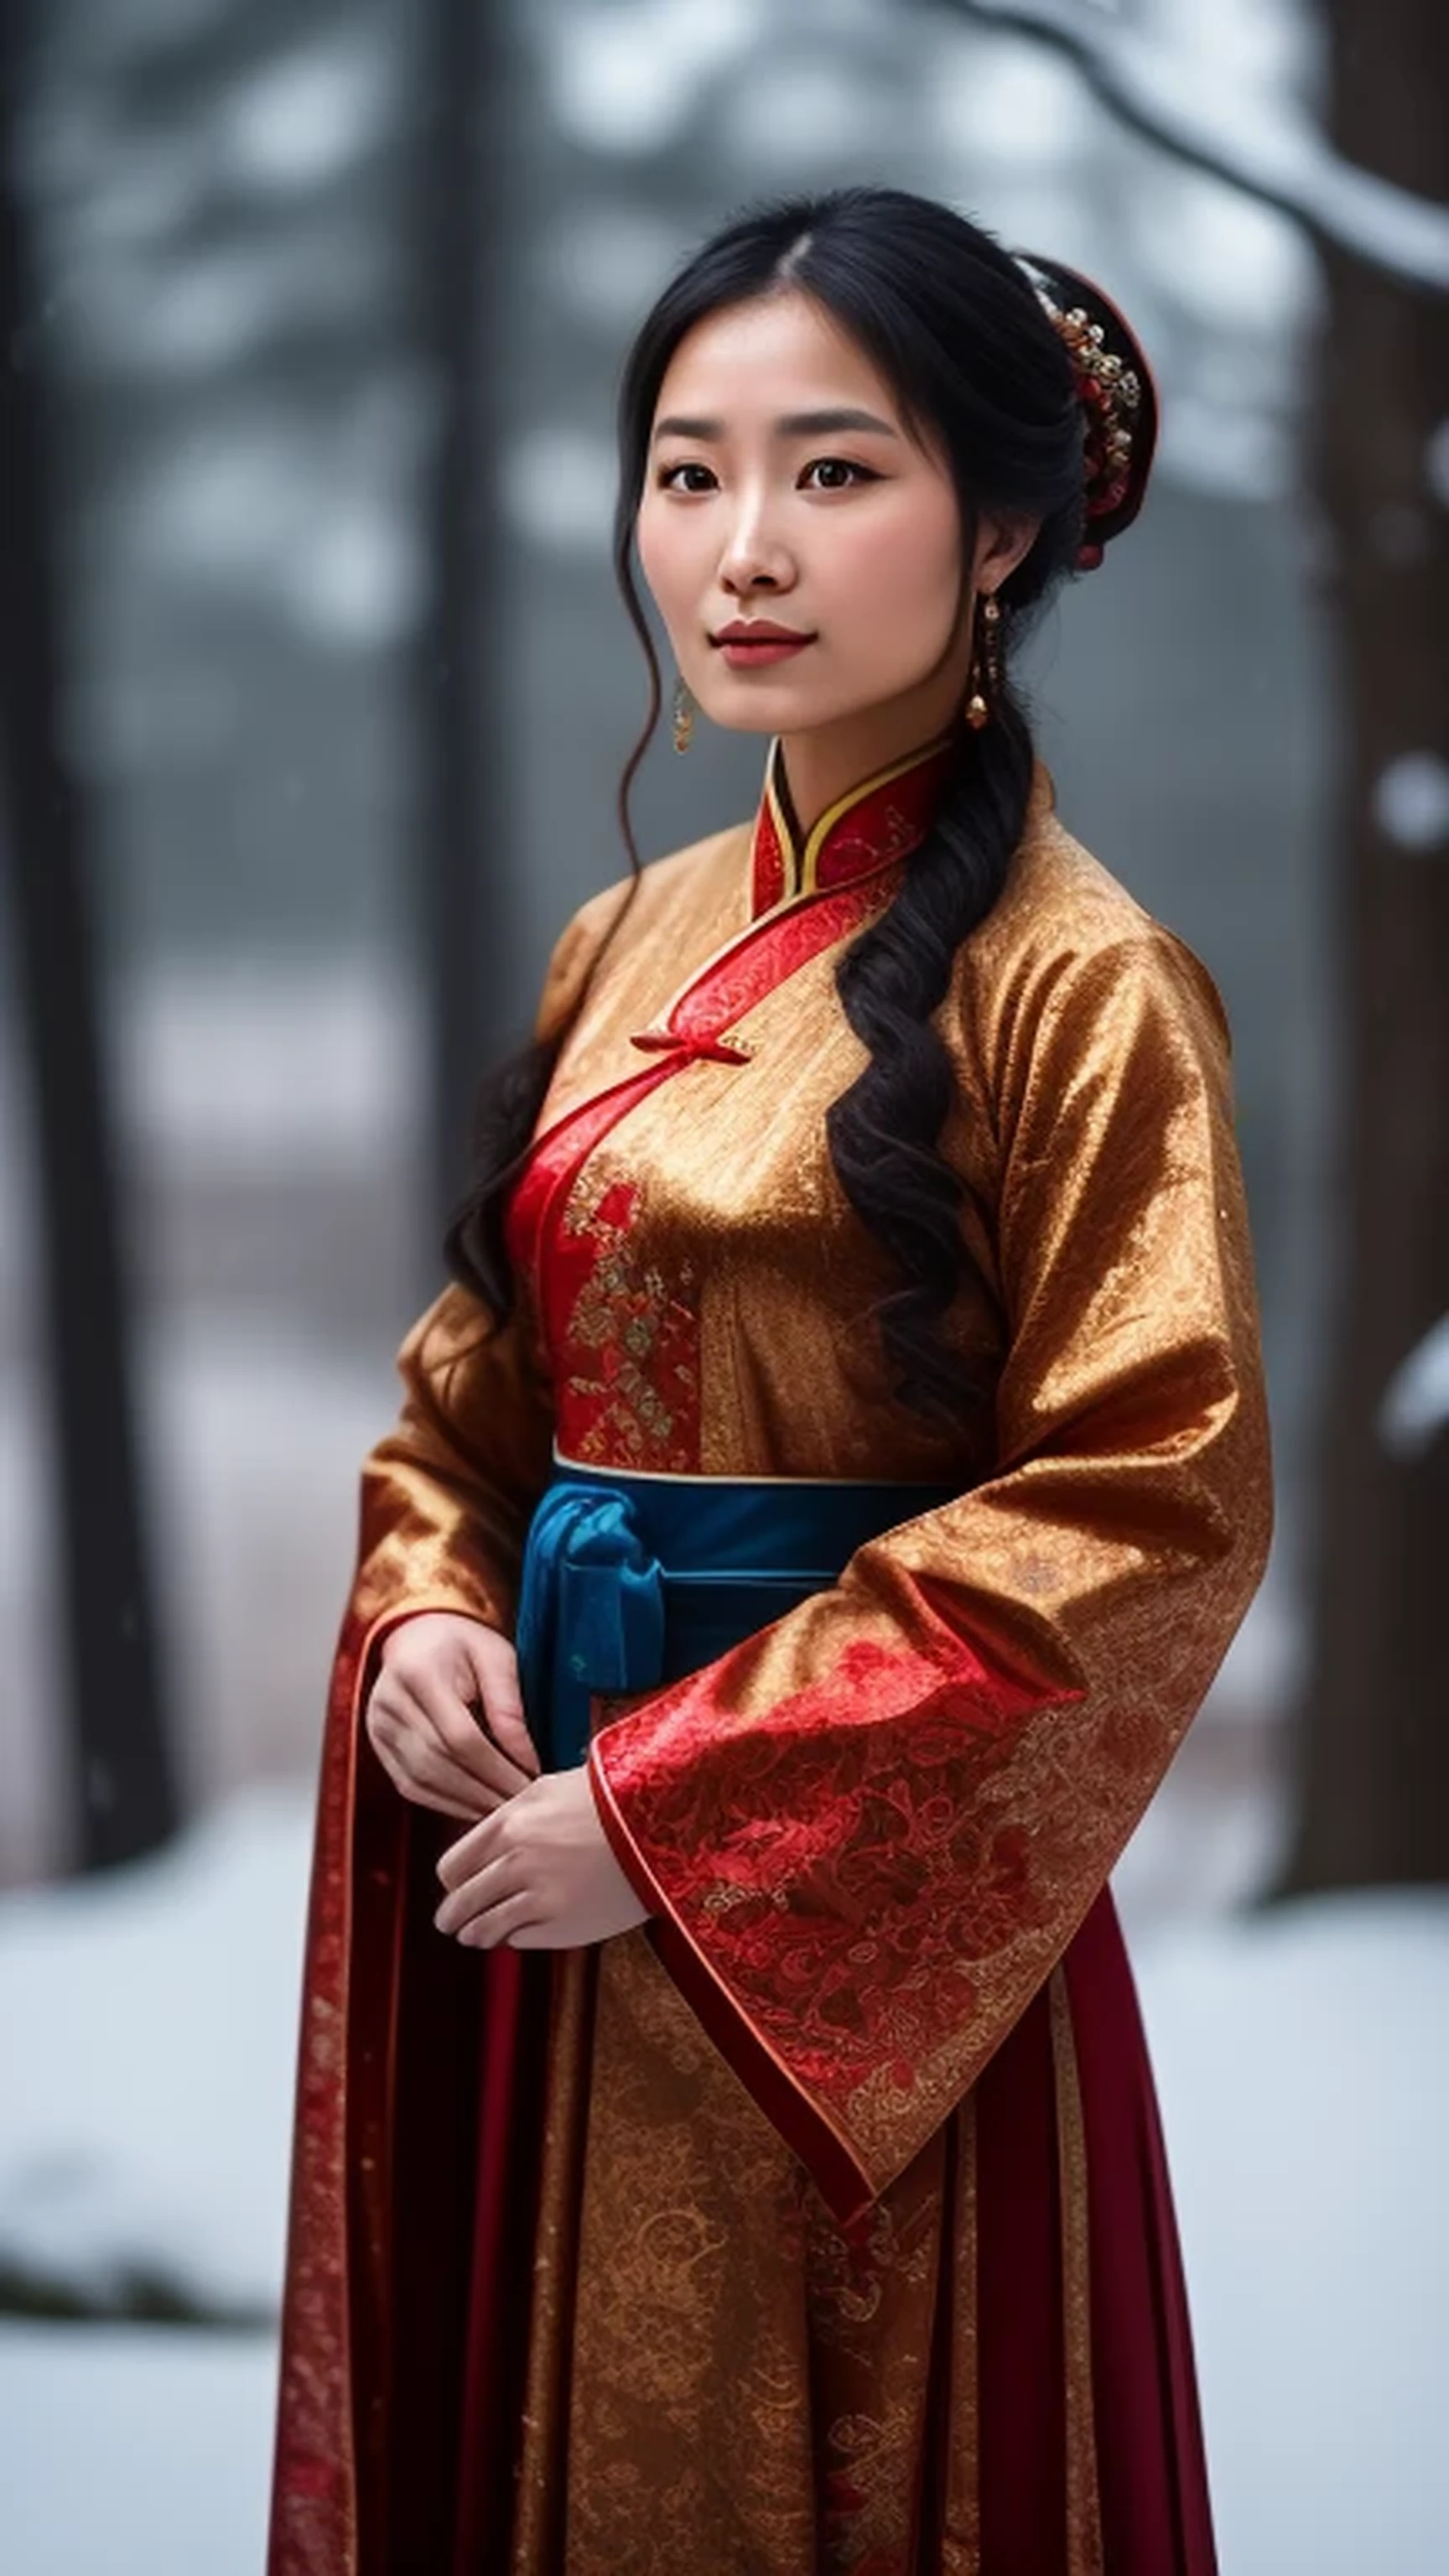 Chinese woman, traditional dress, standi...